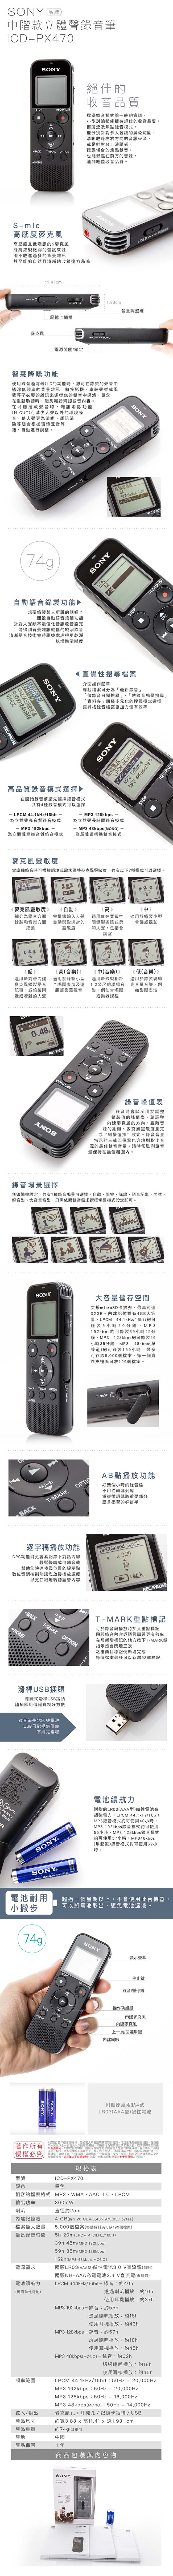 SONY 錄音筆 ICD-PX470 可擴充 內建4GB【中文平輸】